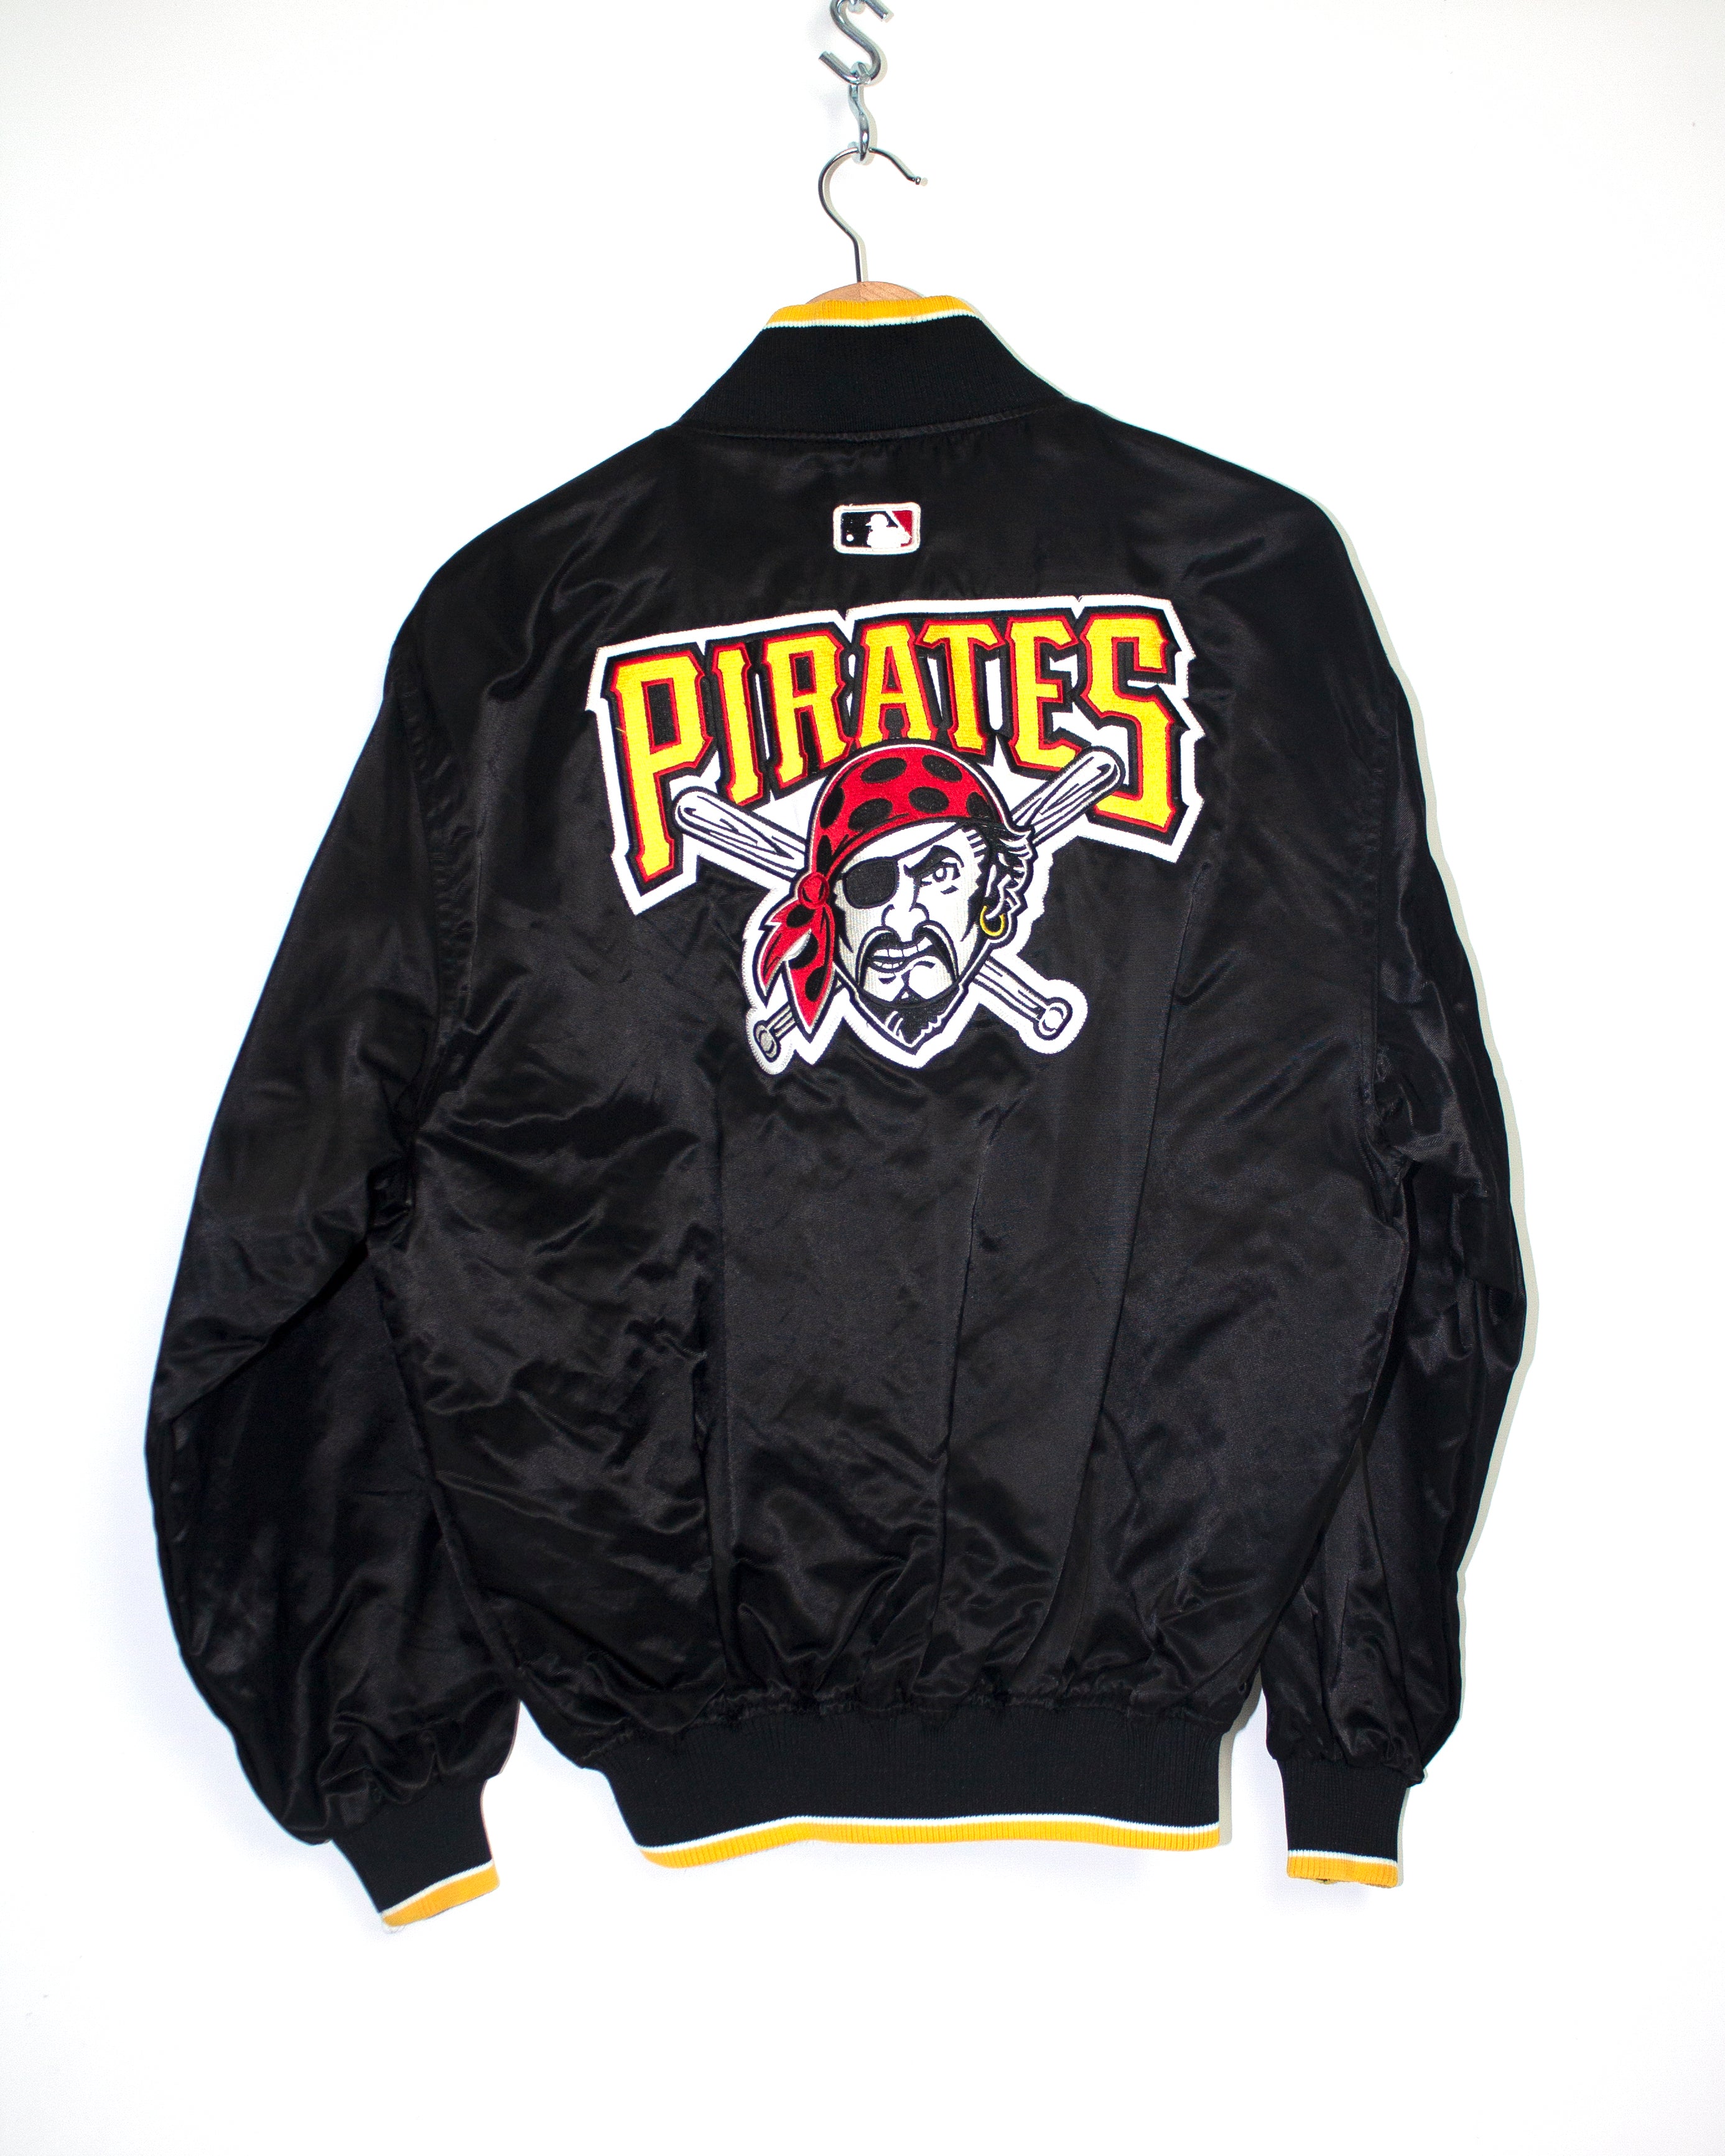 Vintage Pittsburgh Pirates Starter Jacket Sz M